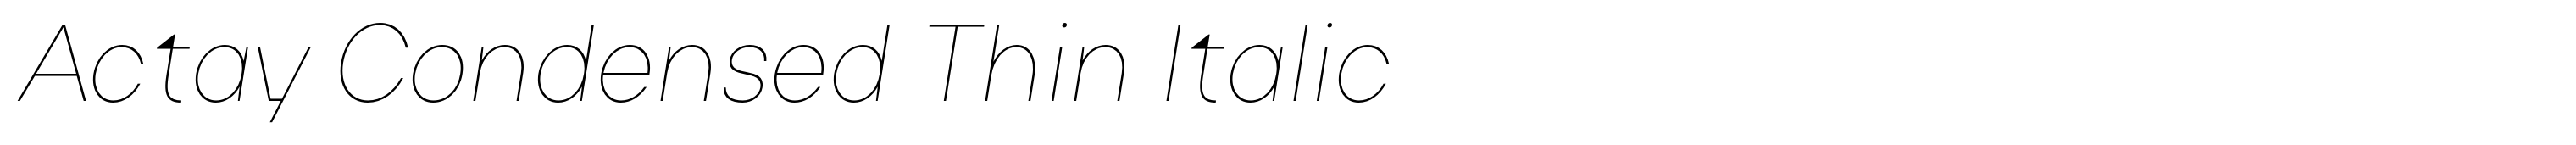 Actay Condensed Thin Italic